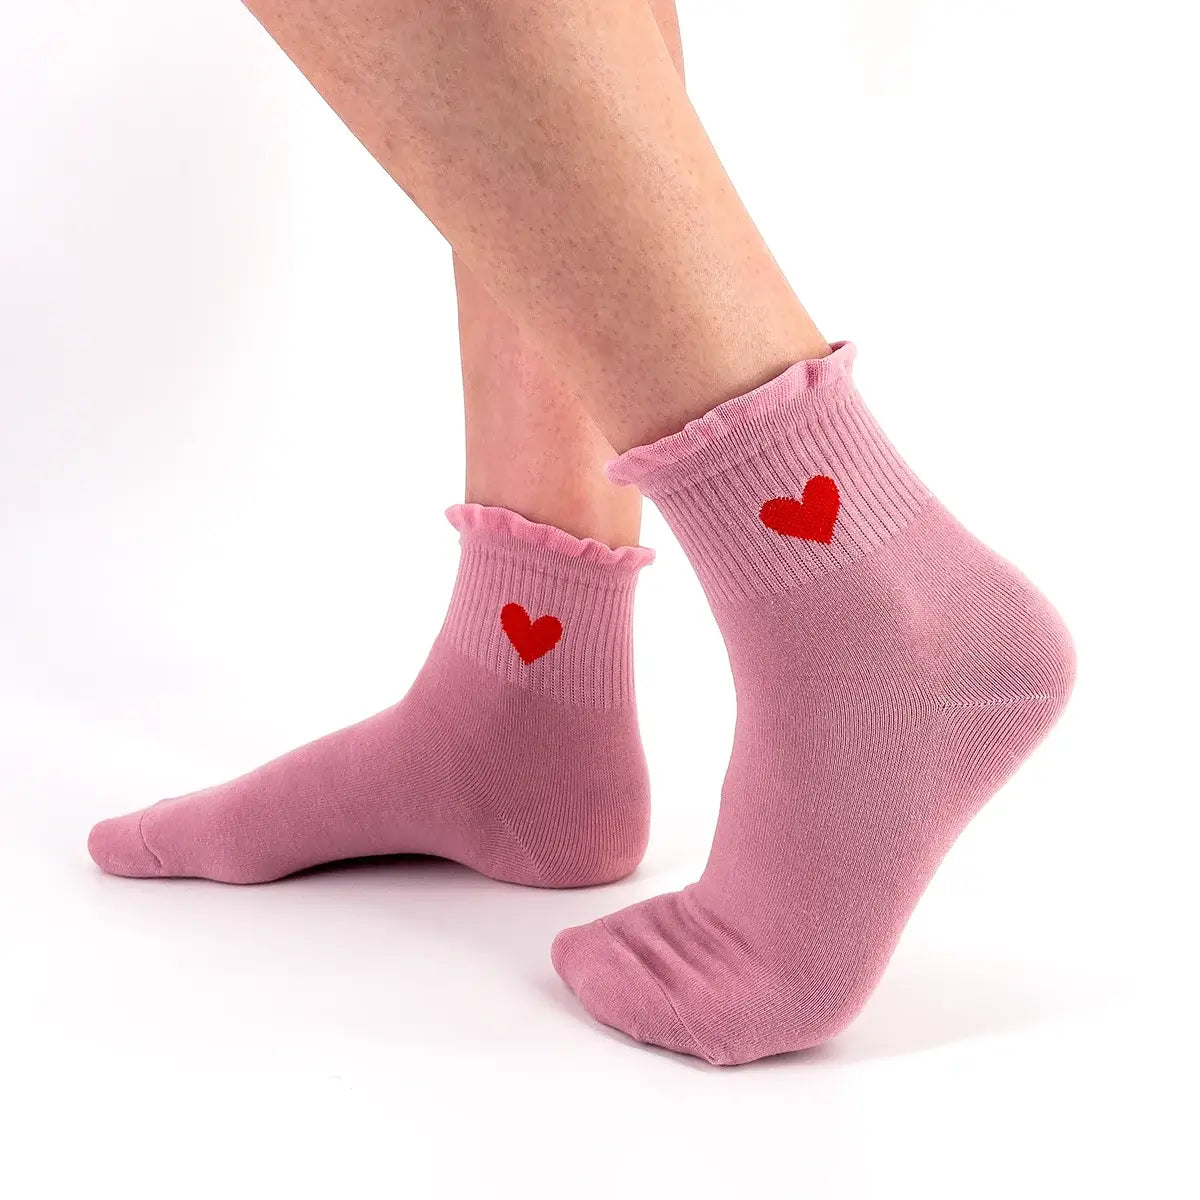 Chaussettes longues roses adultes en coton avec dentelles et cœur sur le côté | Chaussettes douces et respirantes | Un excellent choix pour les adultes qui aiment les cœurs et les dentelles |